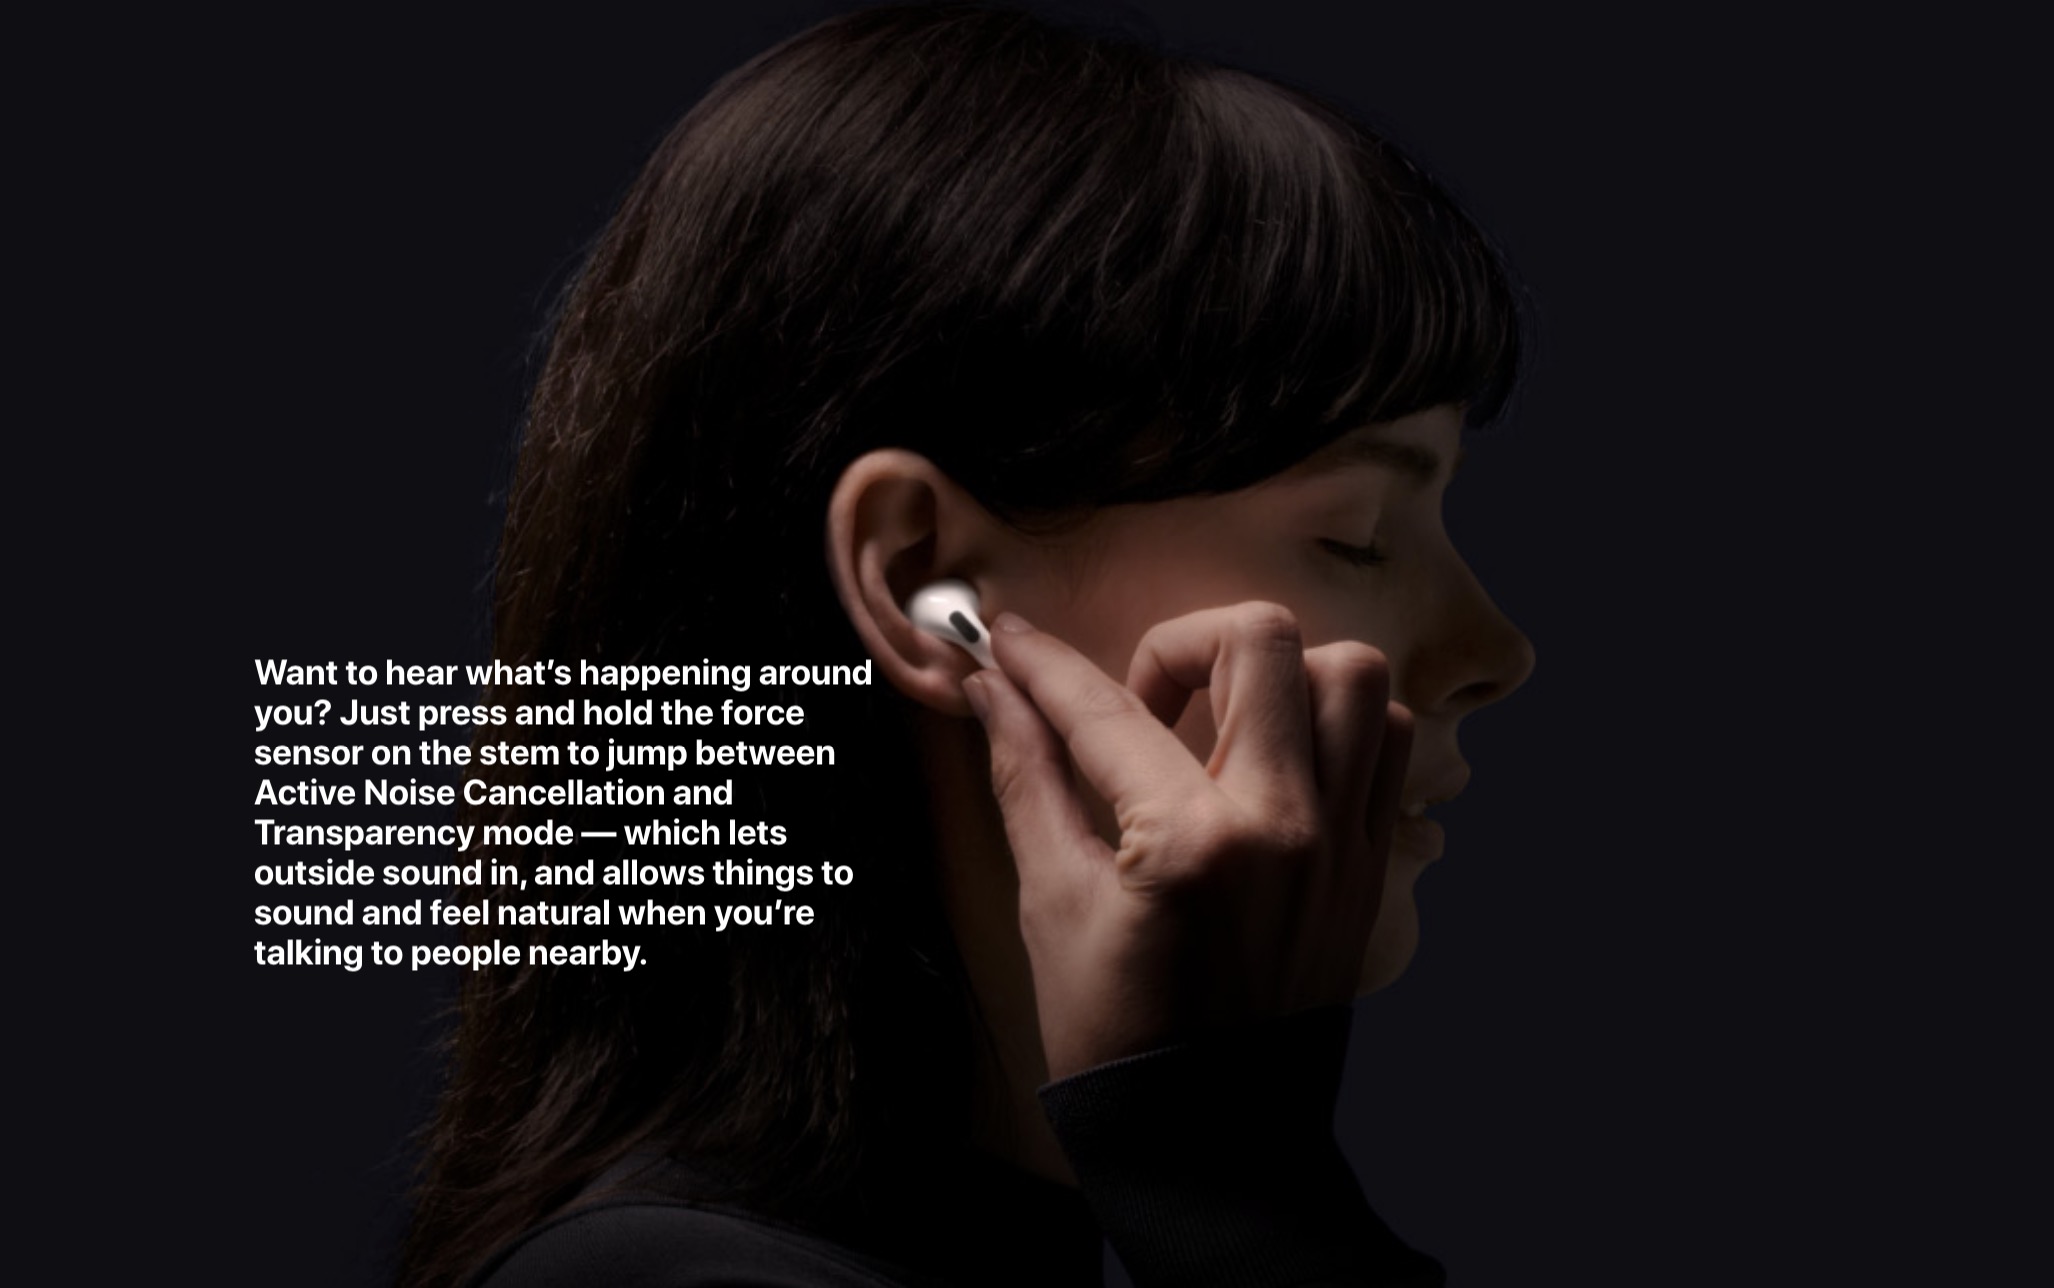 Apple chính thức ra
mắt AirPods Pro: thiết kế nhét tai, chống ồn chủ động, tích
hợp cảm biến lực, giá 5,8 triệu VND